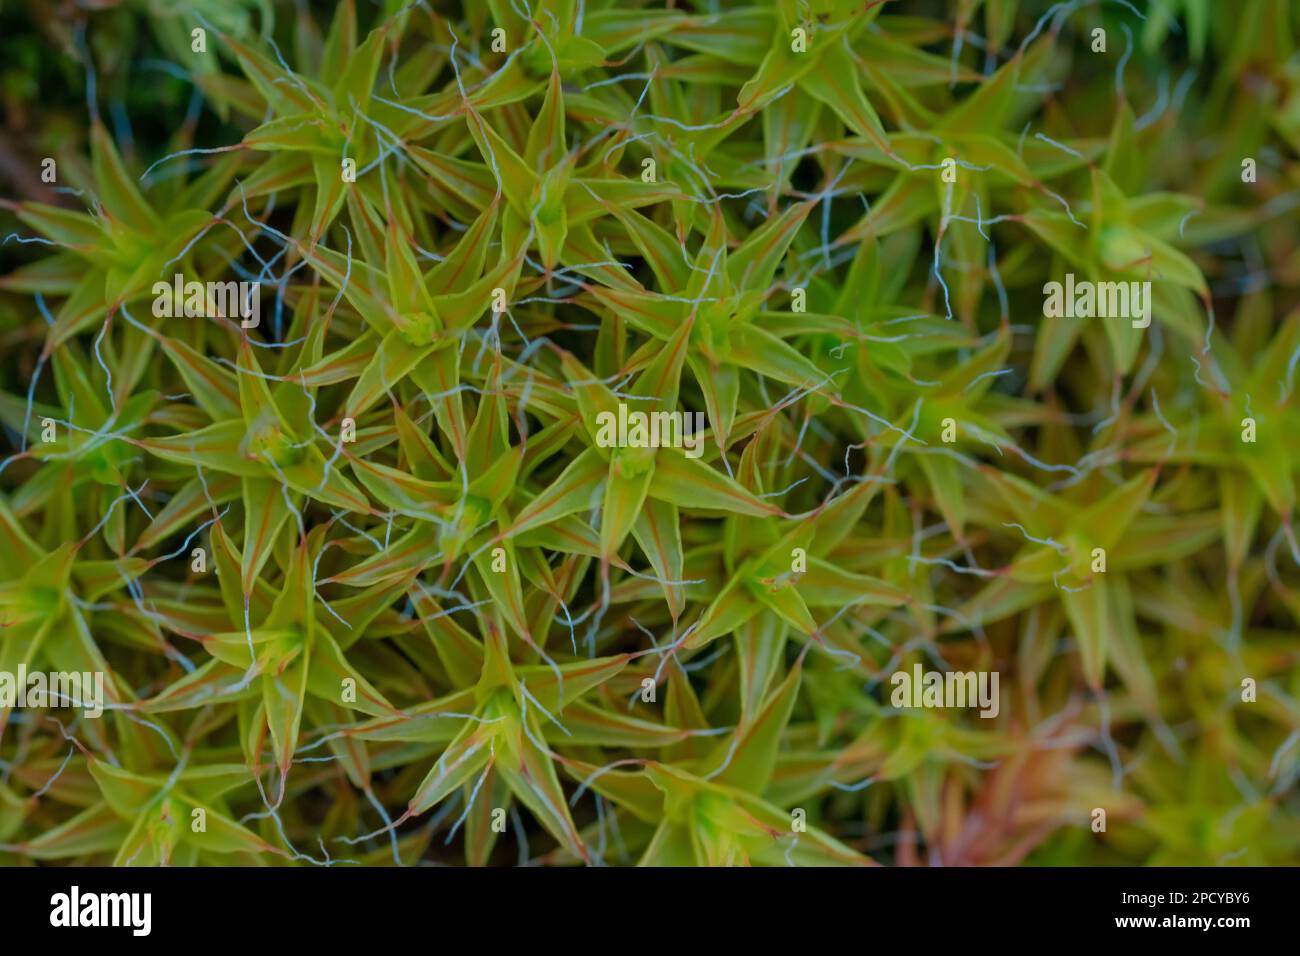 A Close up of Tortula muralis moss Stock Photo